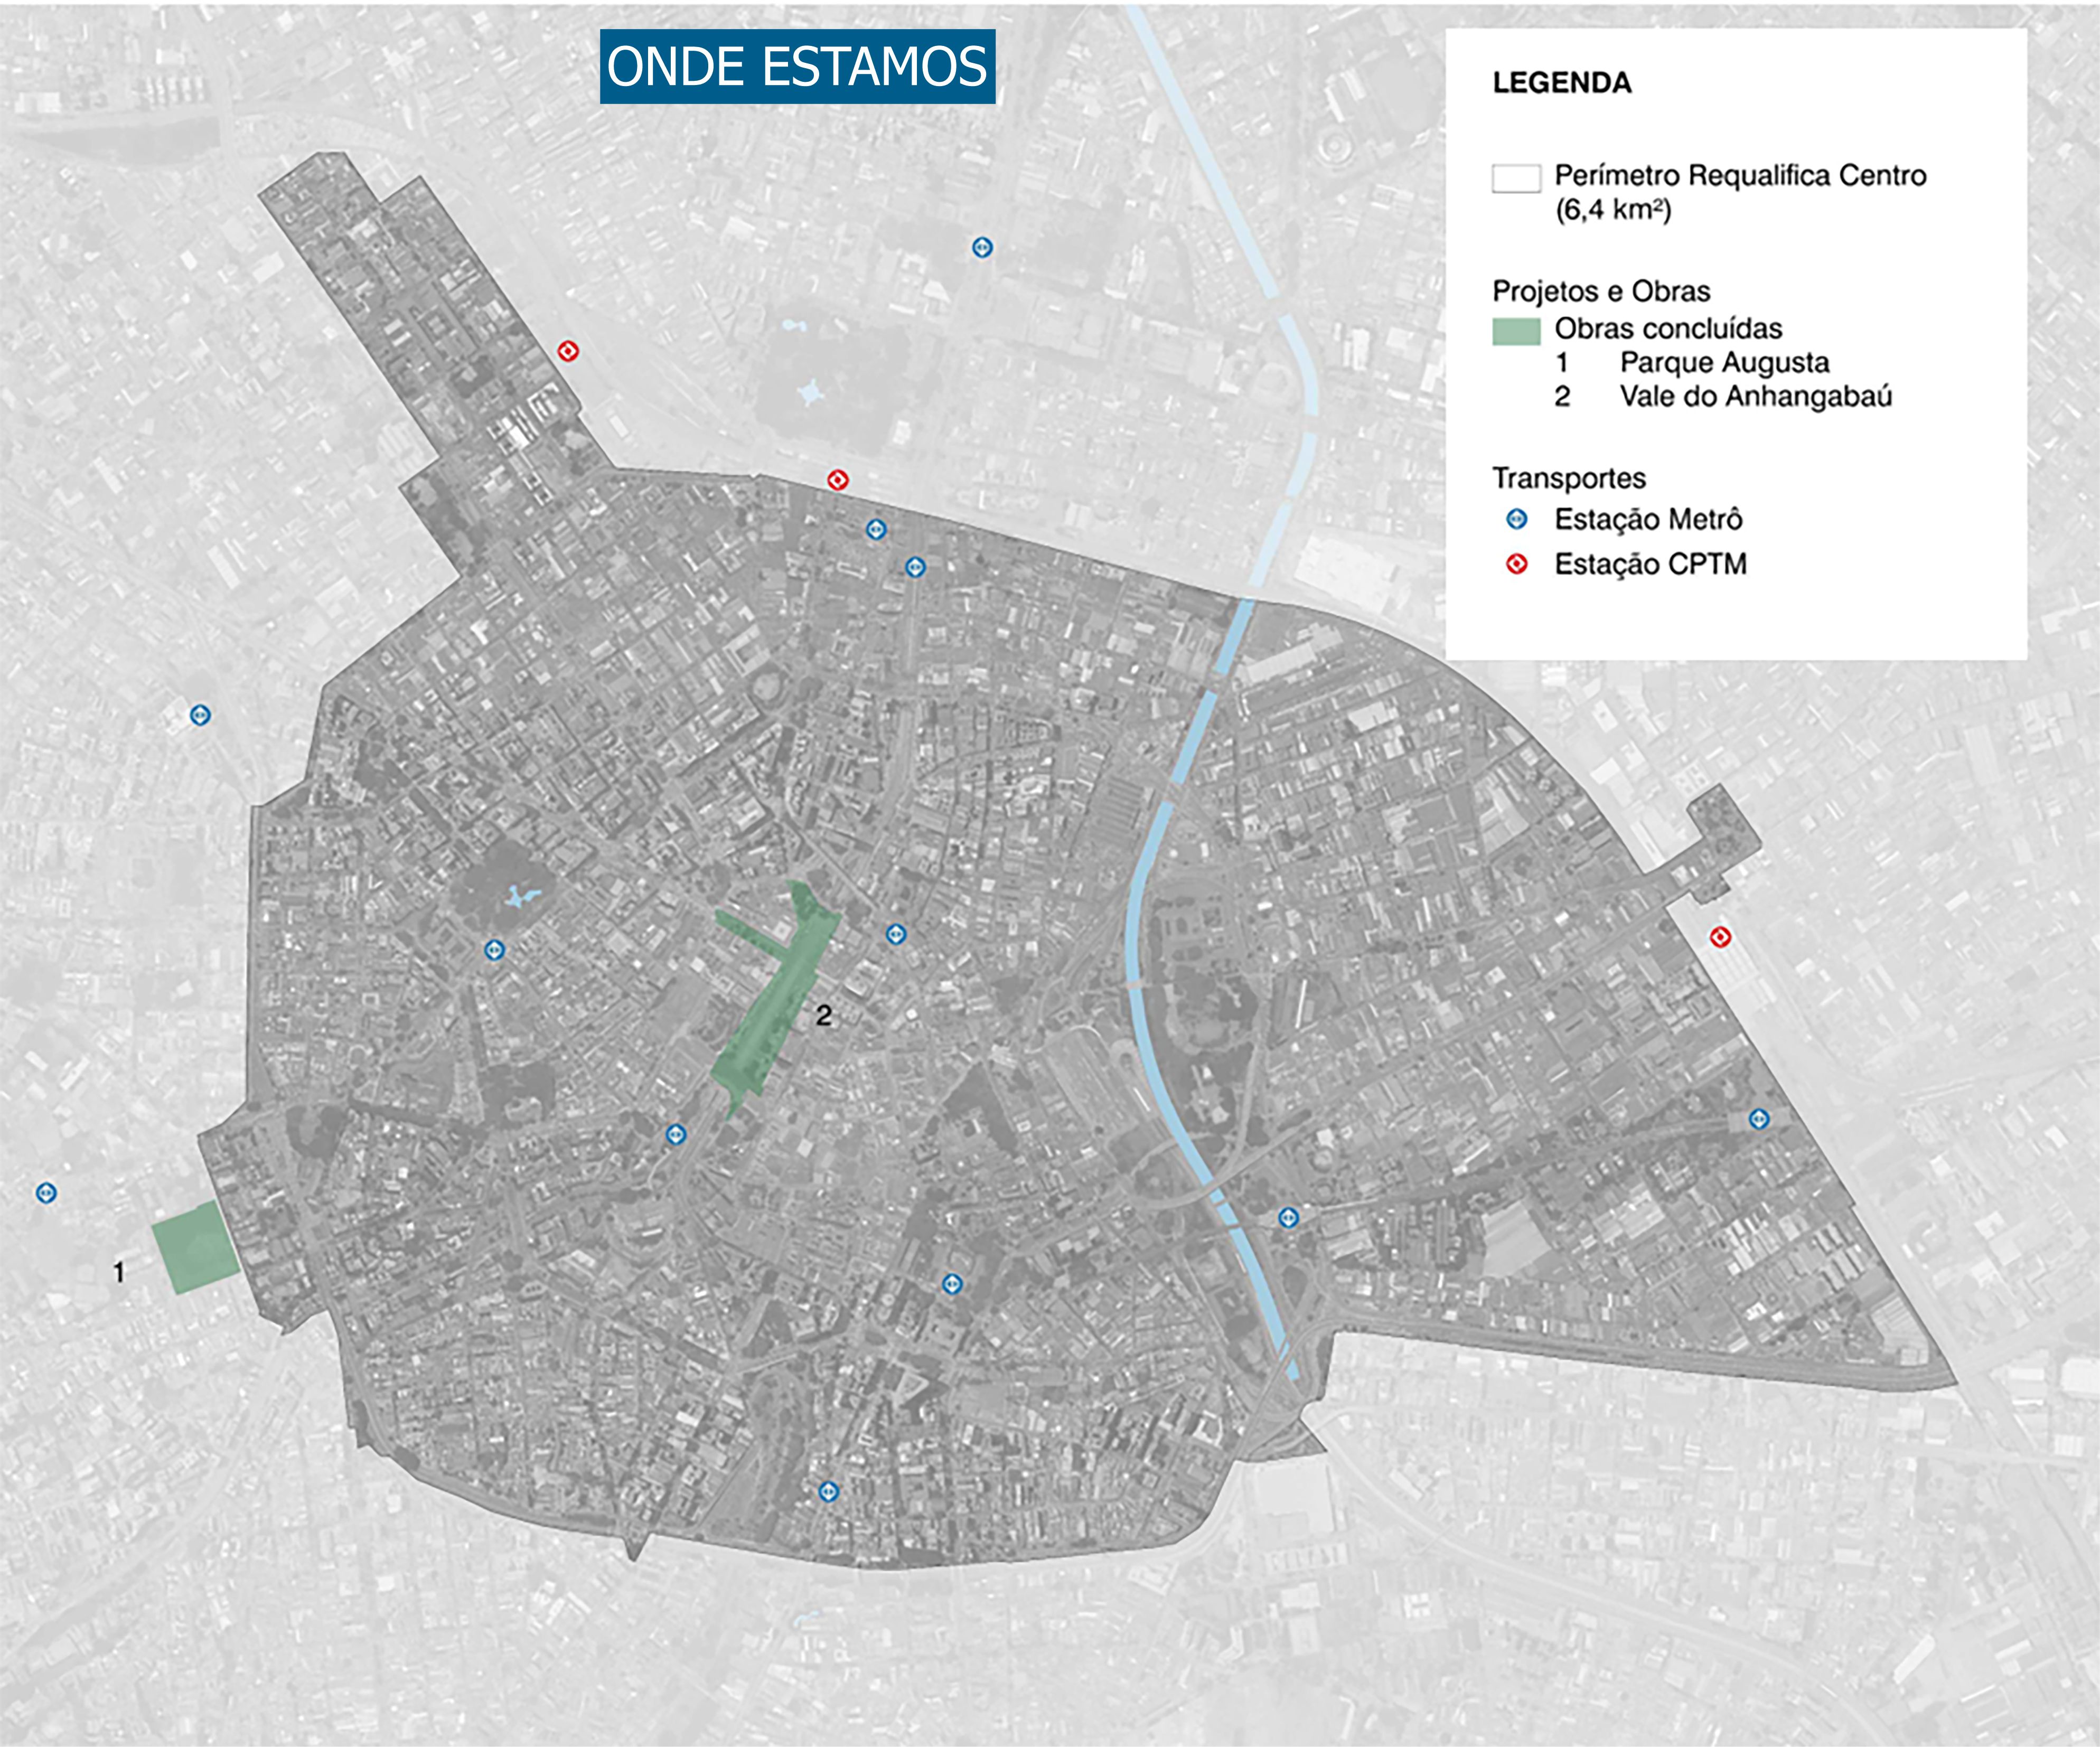 vista aérea de mapa da cidade de são paulo representando a atual situação do projeto "Todos pelo centro"